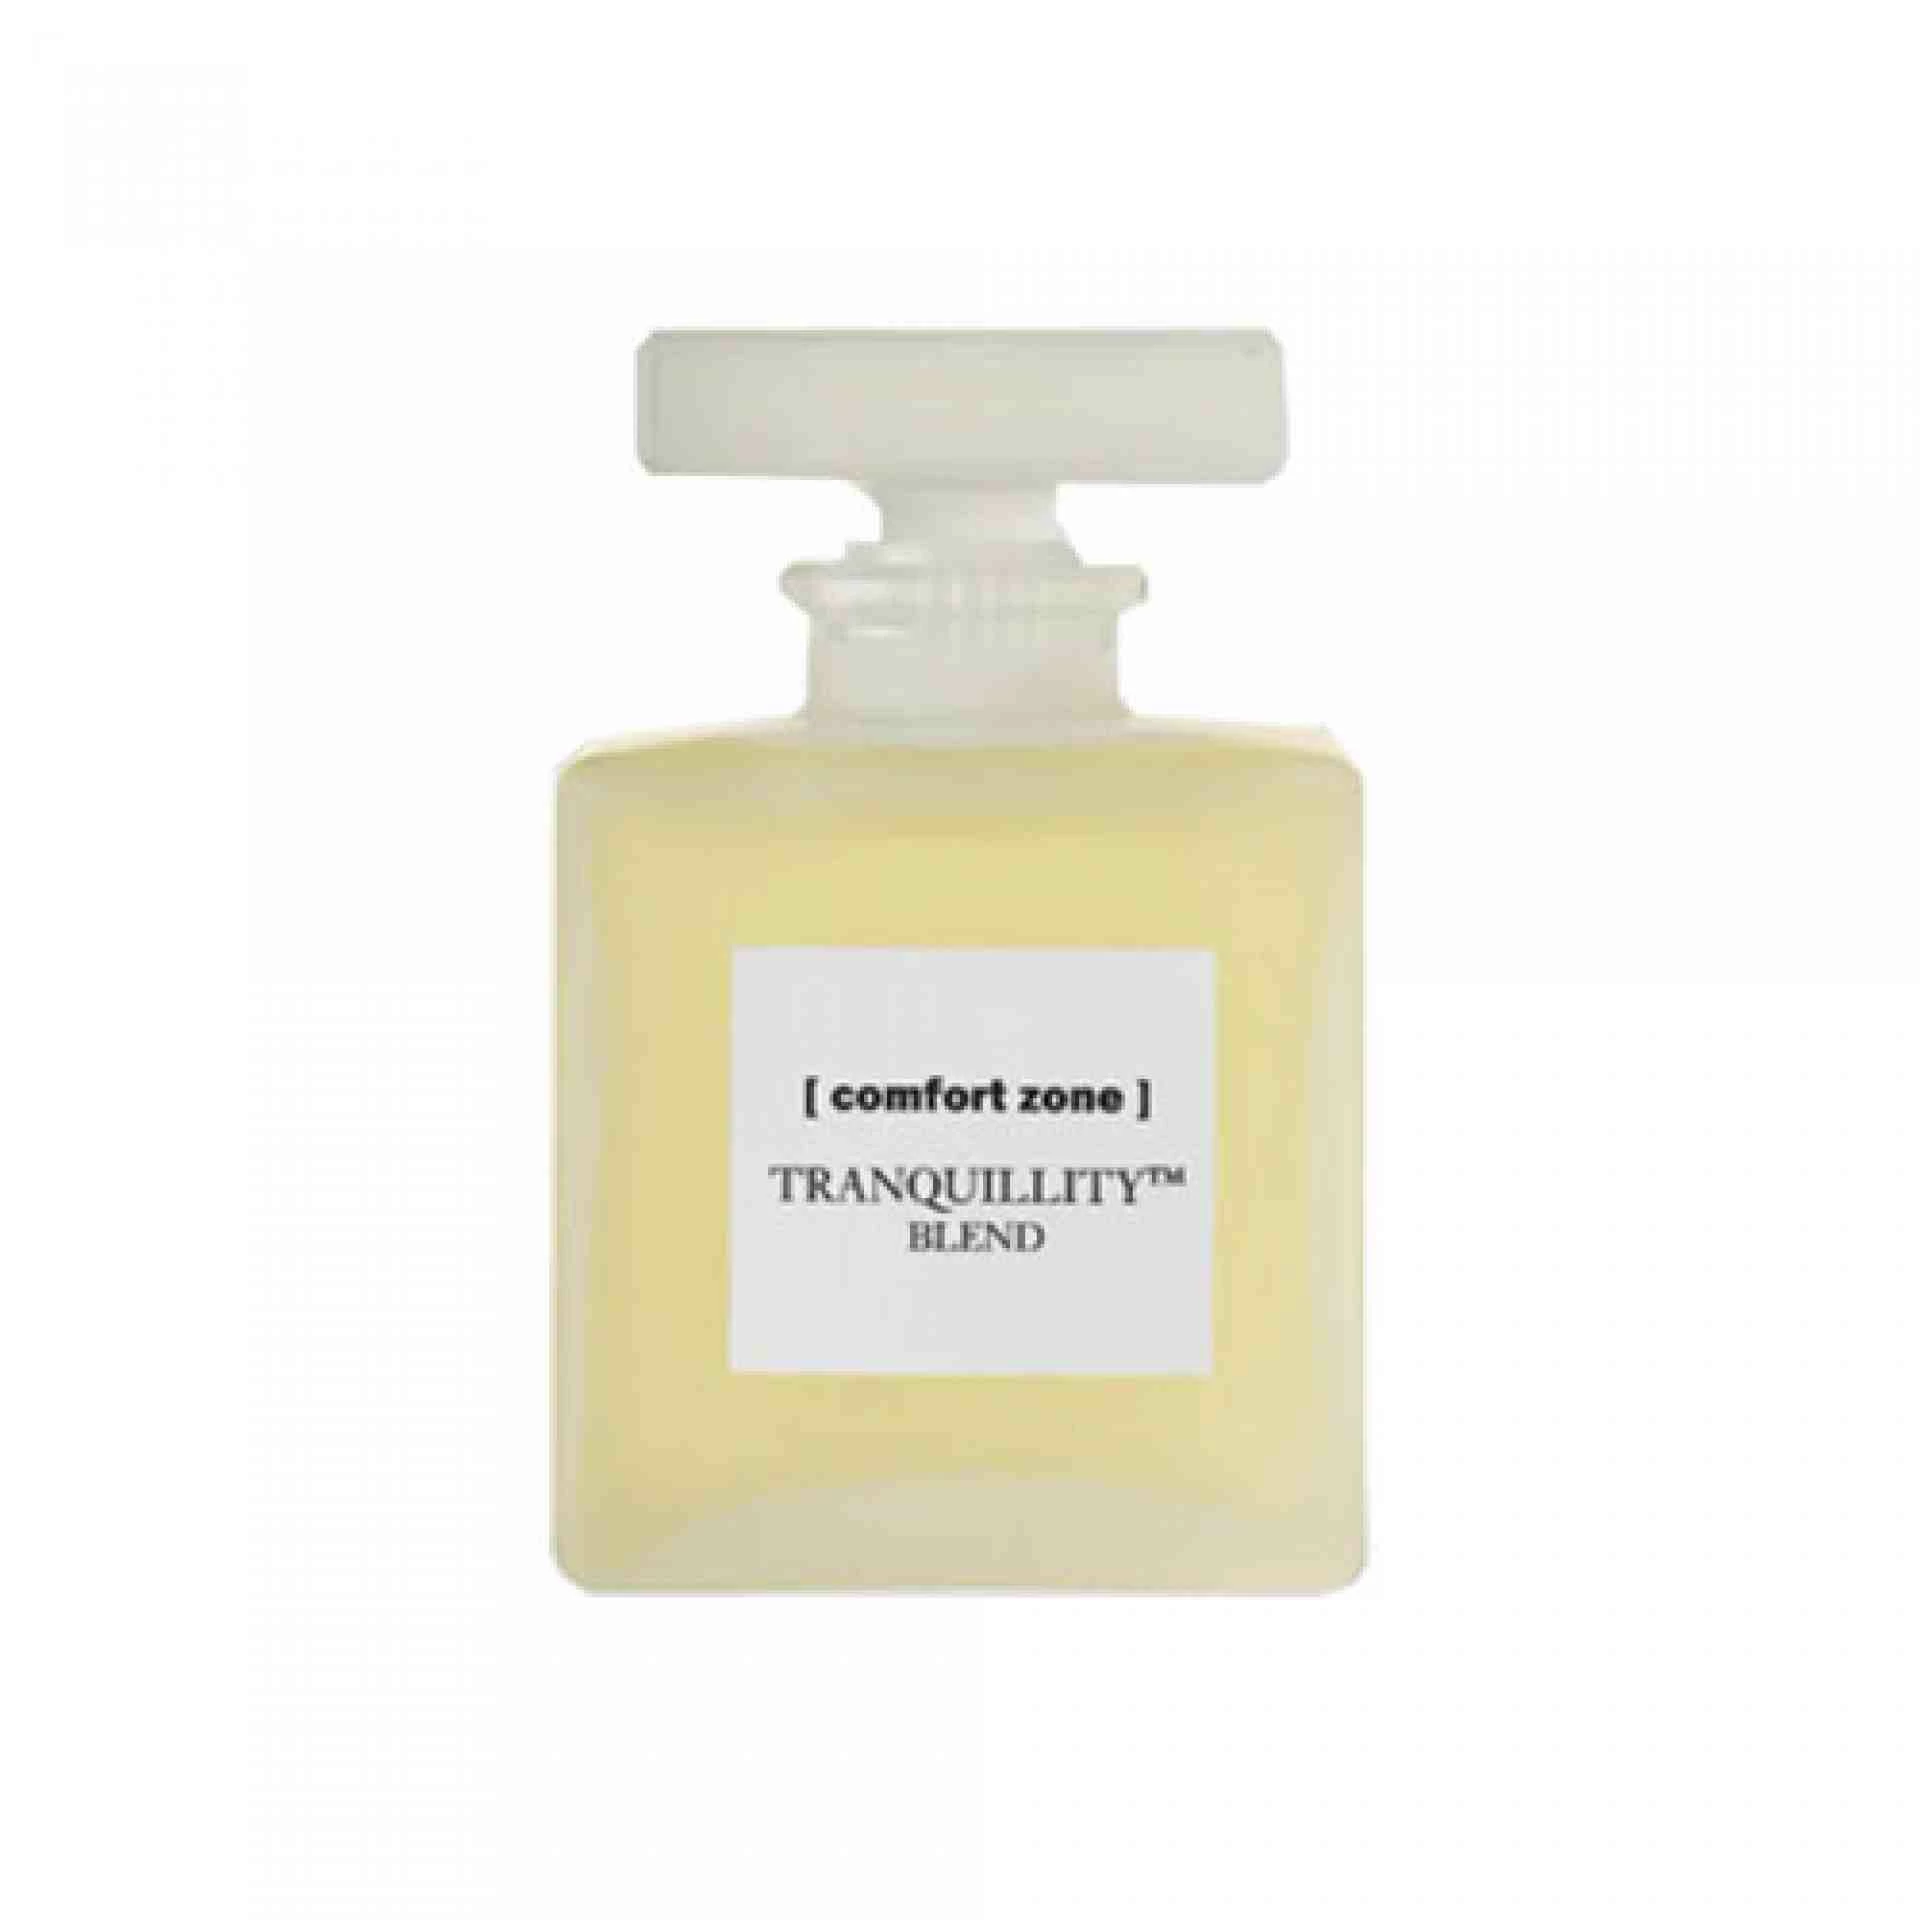 BLEND | Combinación de Aceites Esenciales 50 ml - Tranquillity - Comfort Zone ®